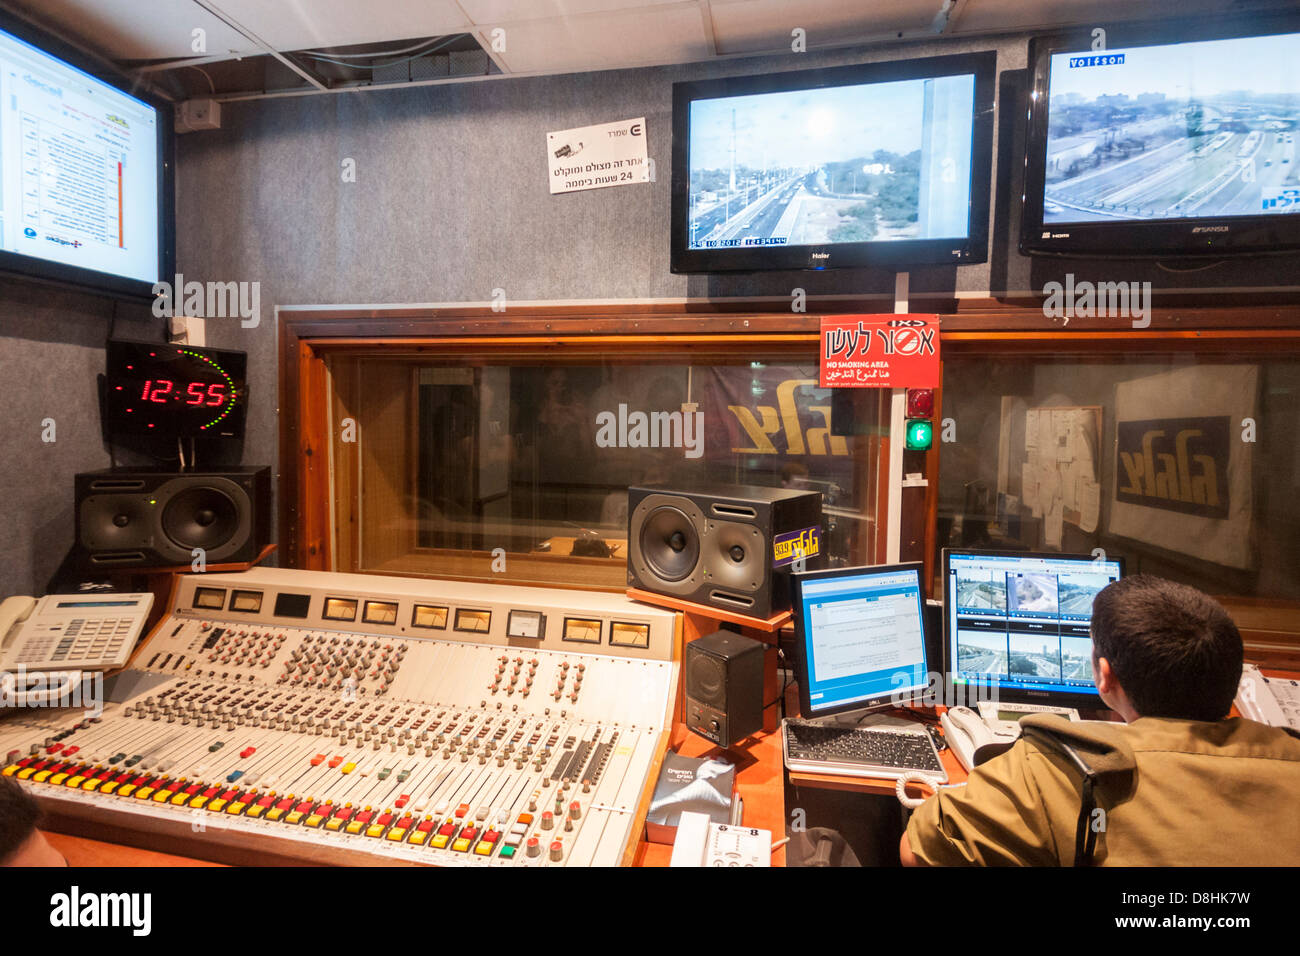 Israel. La sala de control del ejército popular de "Galei Tzahal' ('Ejército') ondas de radio, con pantallas de televisión para informes de tráfico. Foto de stock